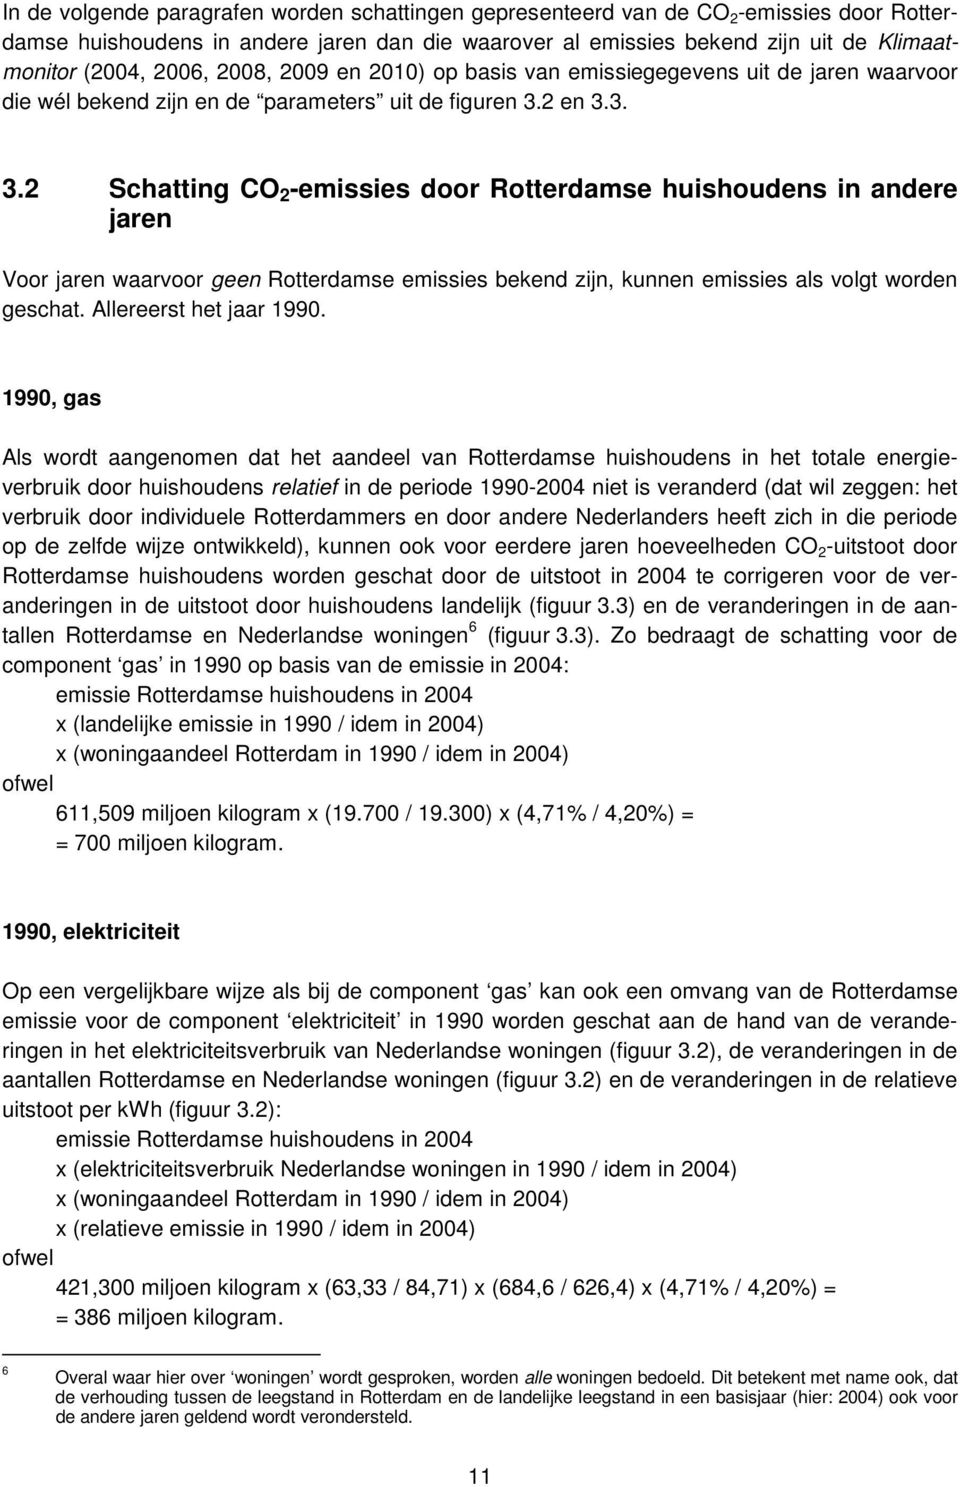 andere jaren Voor jaren waarvoor geen Rotterdamse emissies bekend zijn, kunnen emissies als volgt worden geschat Allereerst het jaar 1990 1990, gas Als wordt aangenomen dat het aandeel van